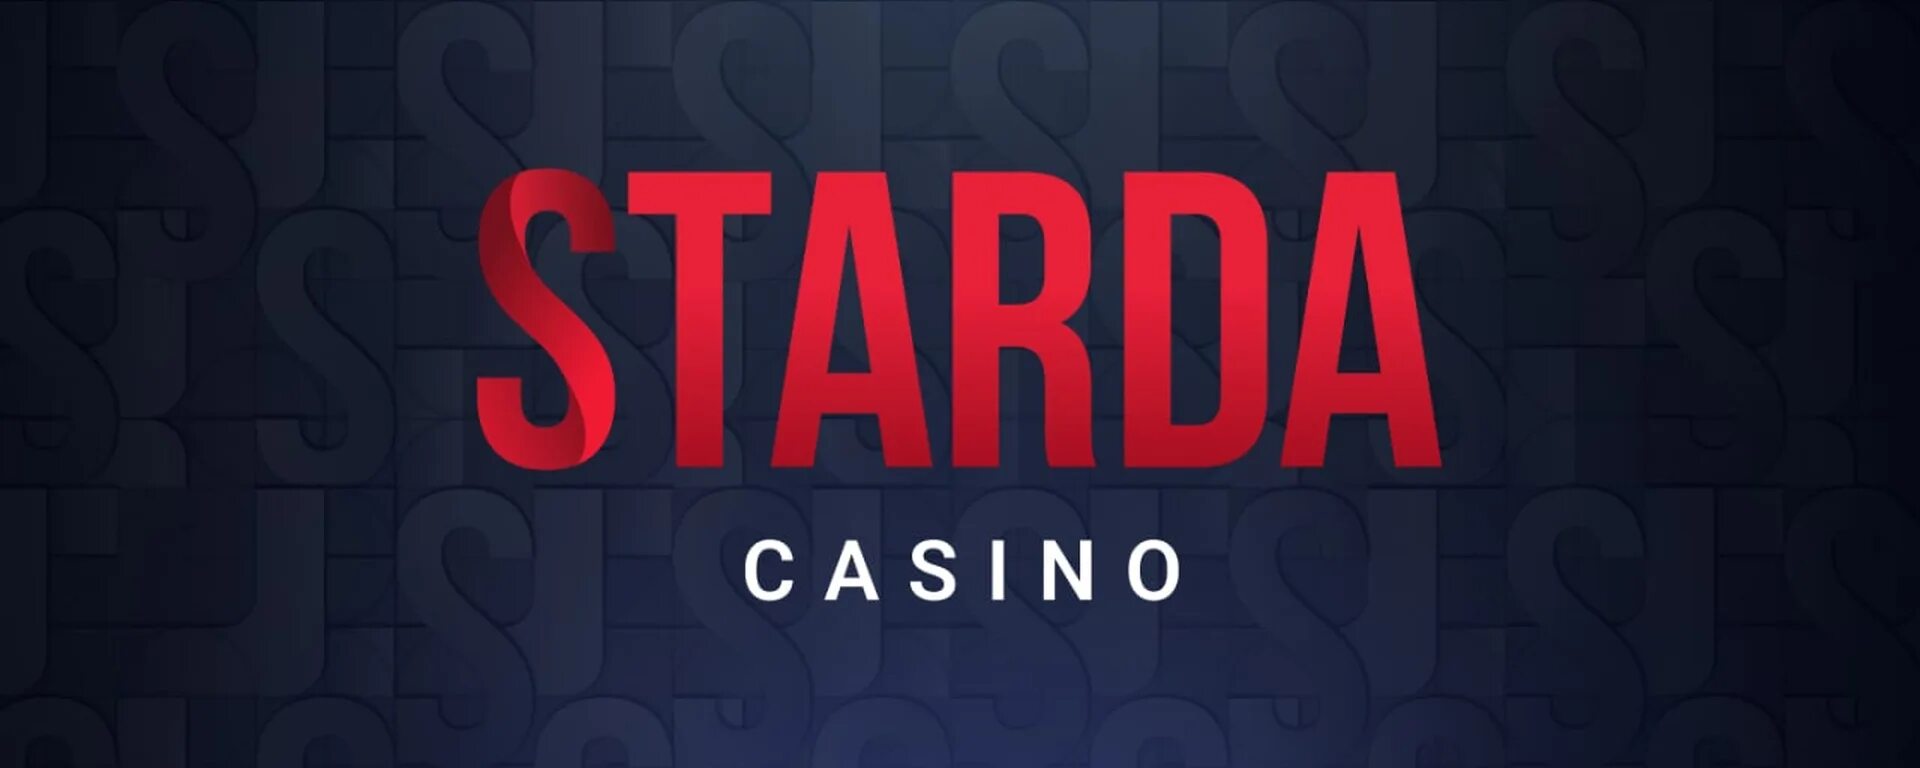 Starda casino рабочий сайт. Starda казино. Логотип казино. Старда картинки казино.